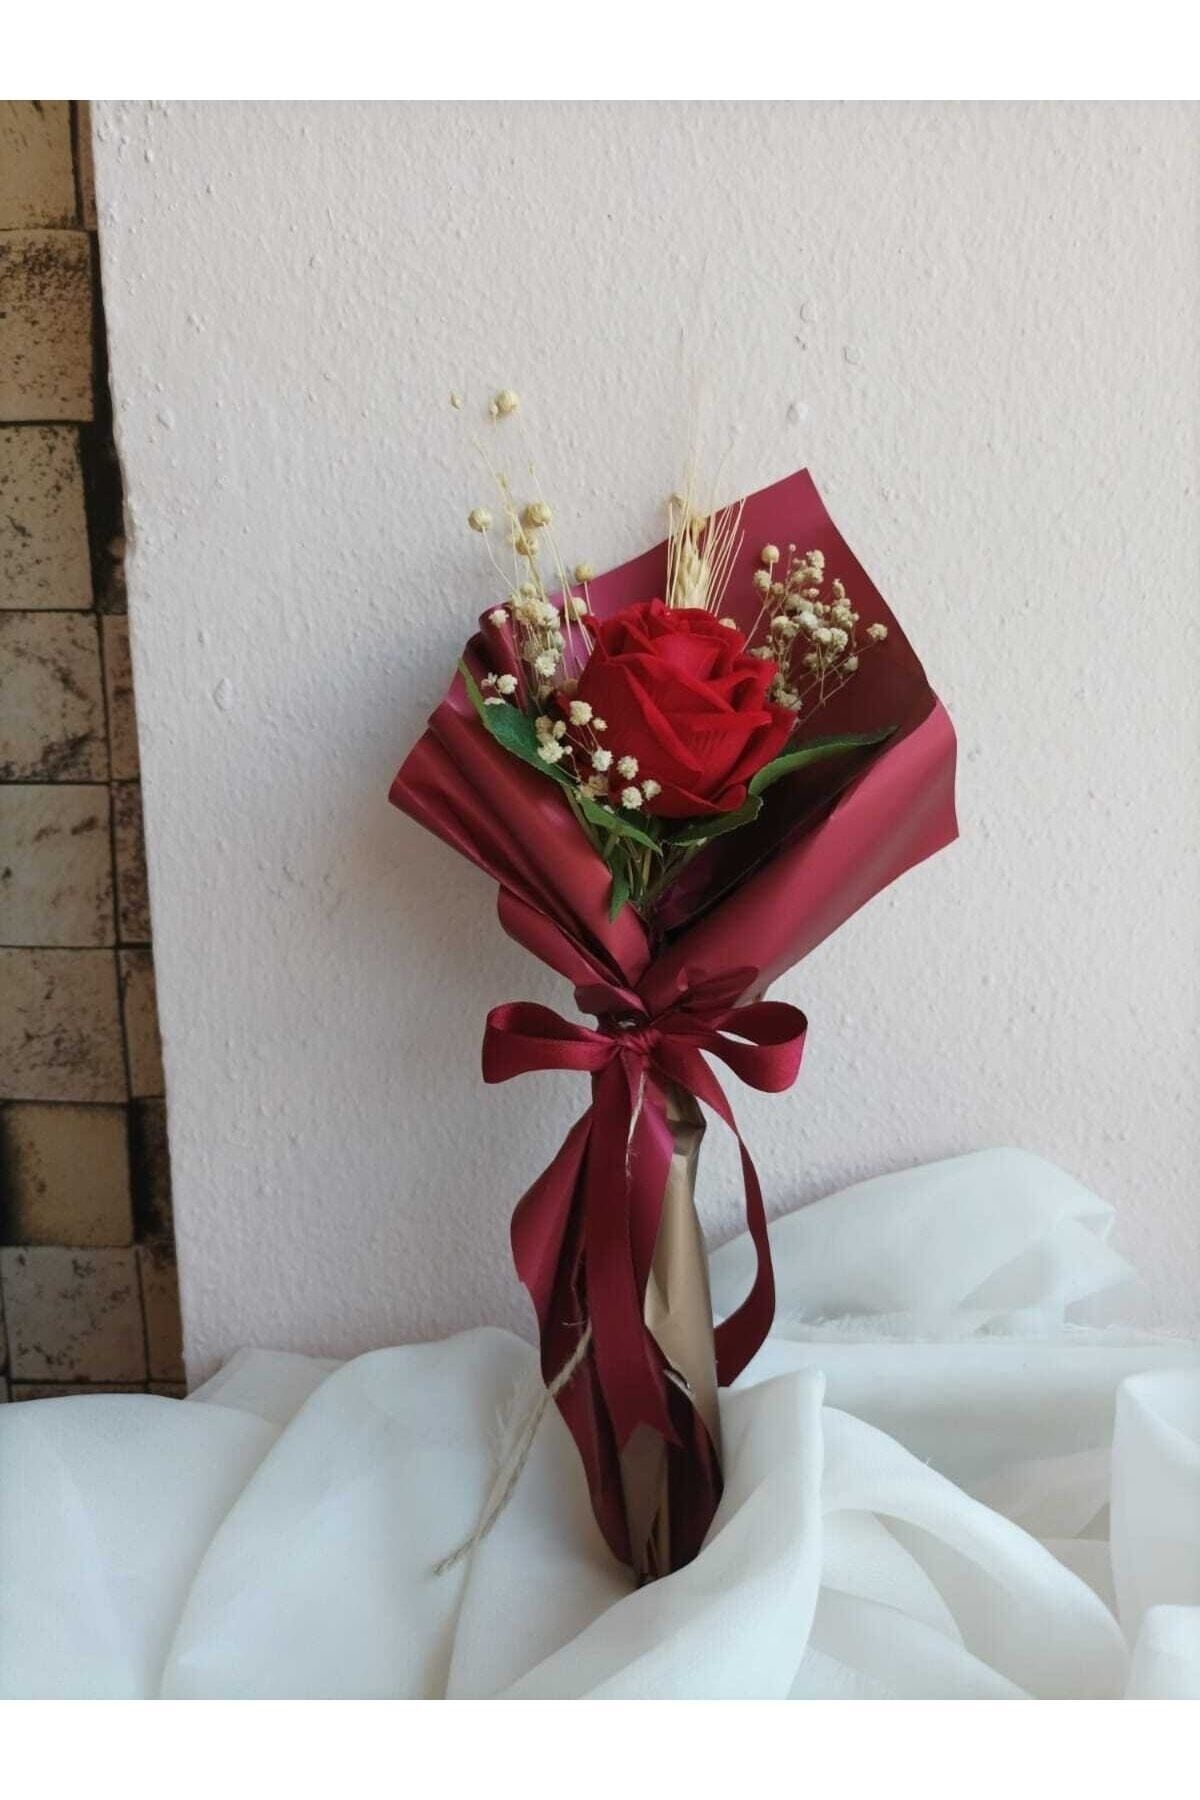 Destina Tasarım Tekli Gül Buketi, Kız Isteme Çiçeği, Söz Çiçeği, Kadife Gül Yapay Çiçek Buketi